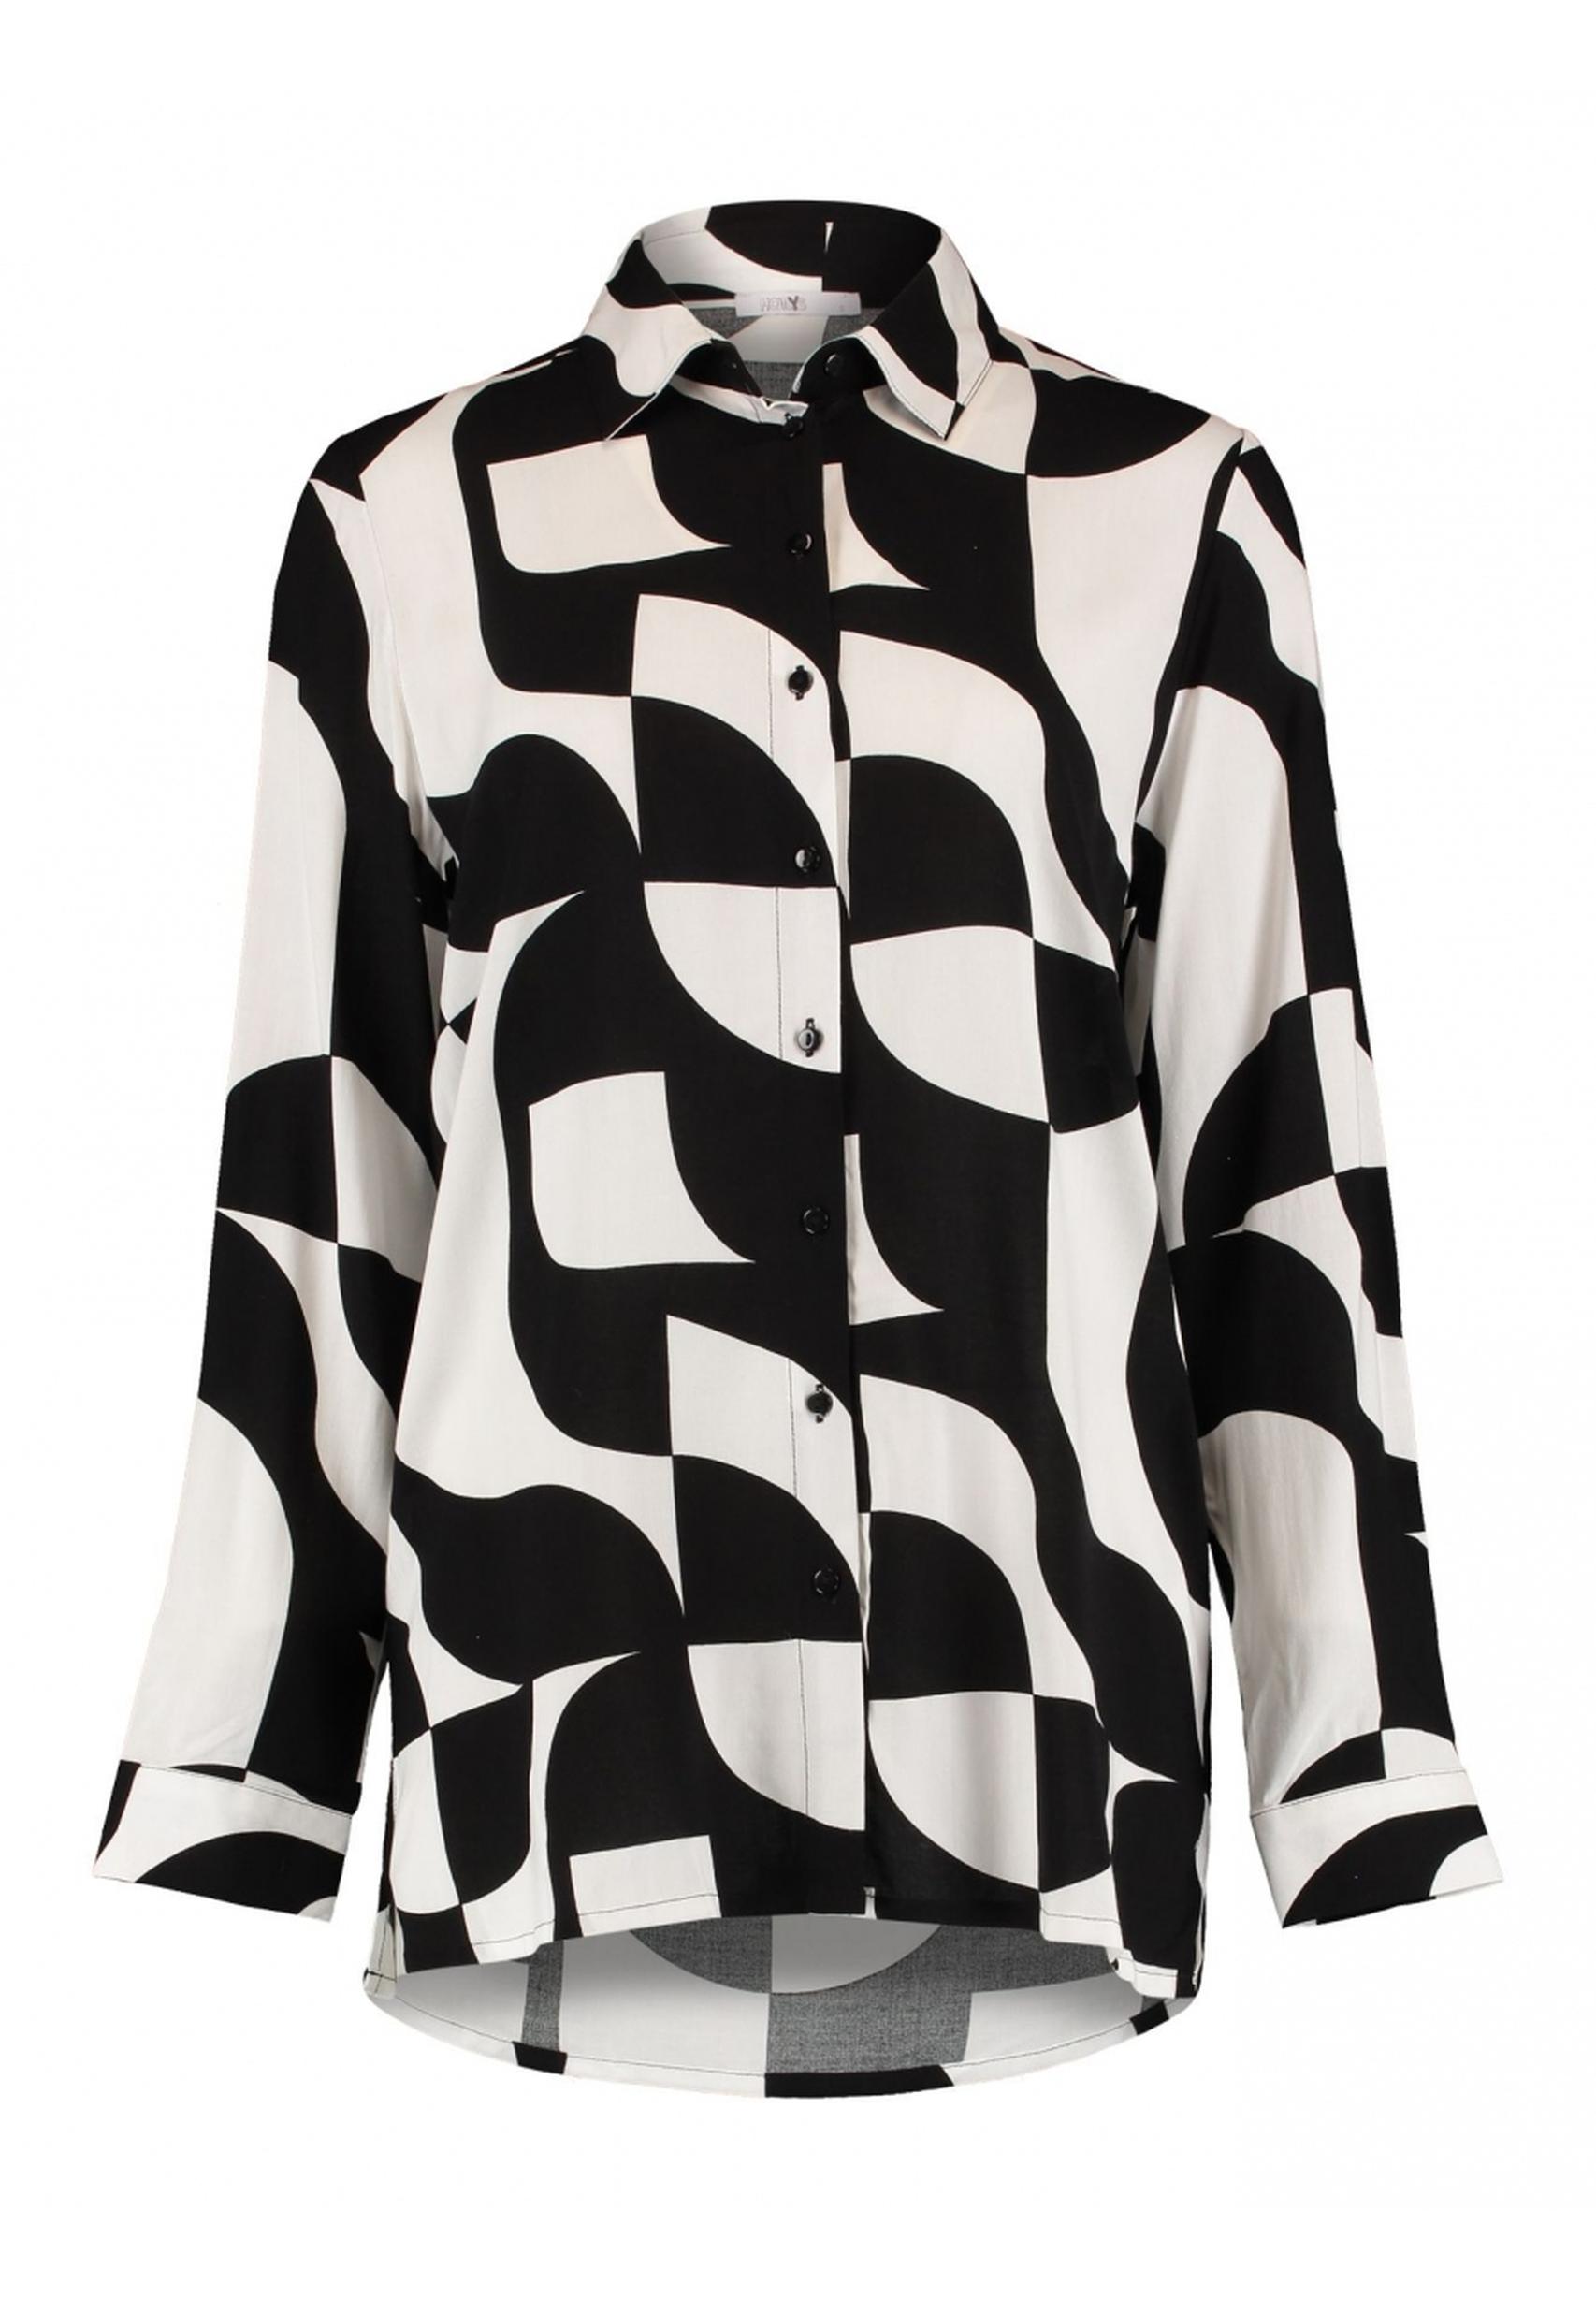 schwarz-weiß Ni44na aus HAILYS Kollektion von Bluse in der BOX-2302029 - Trendige